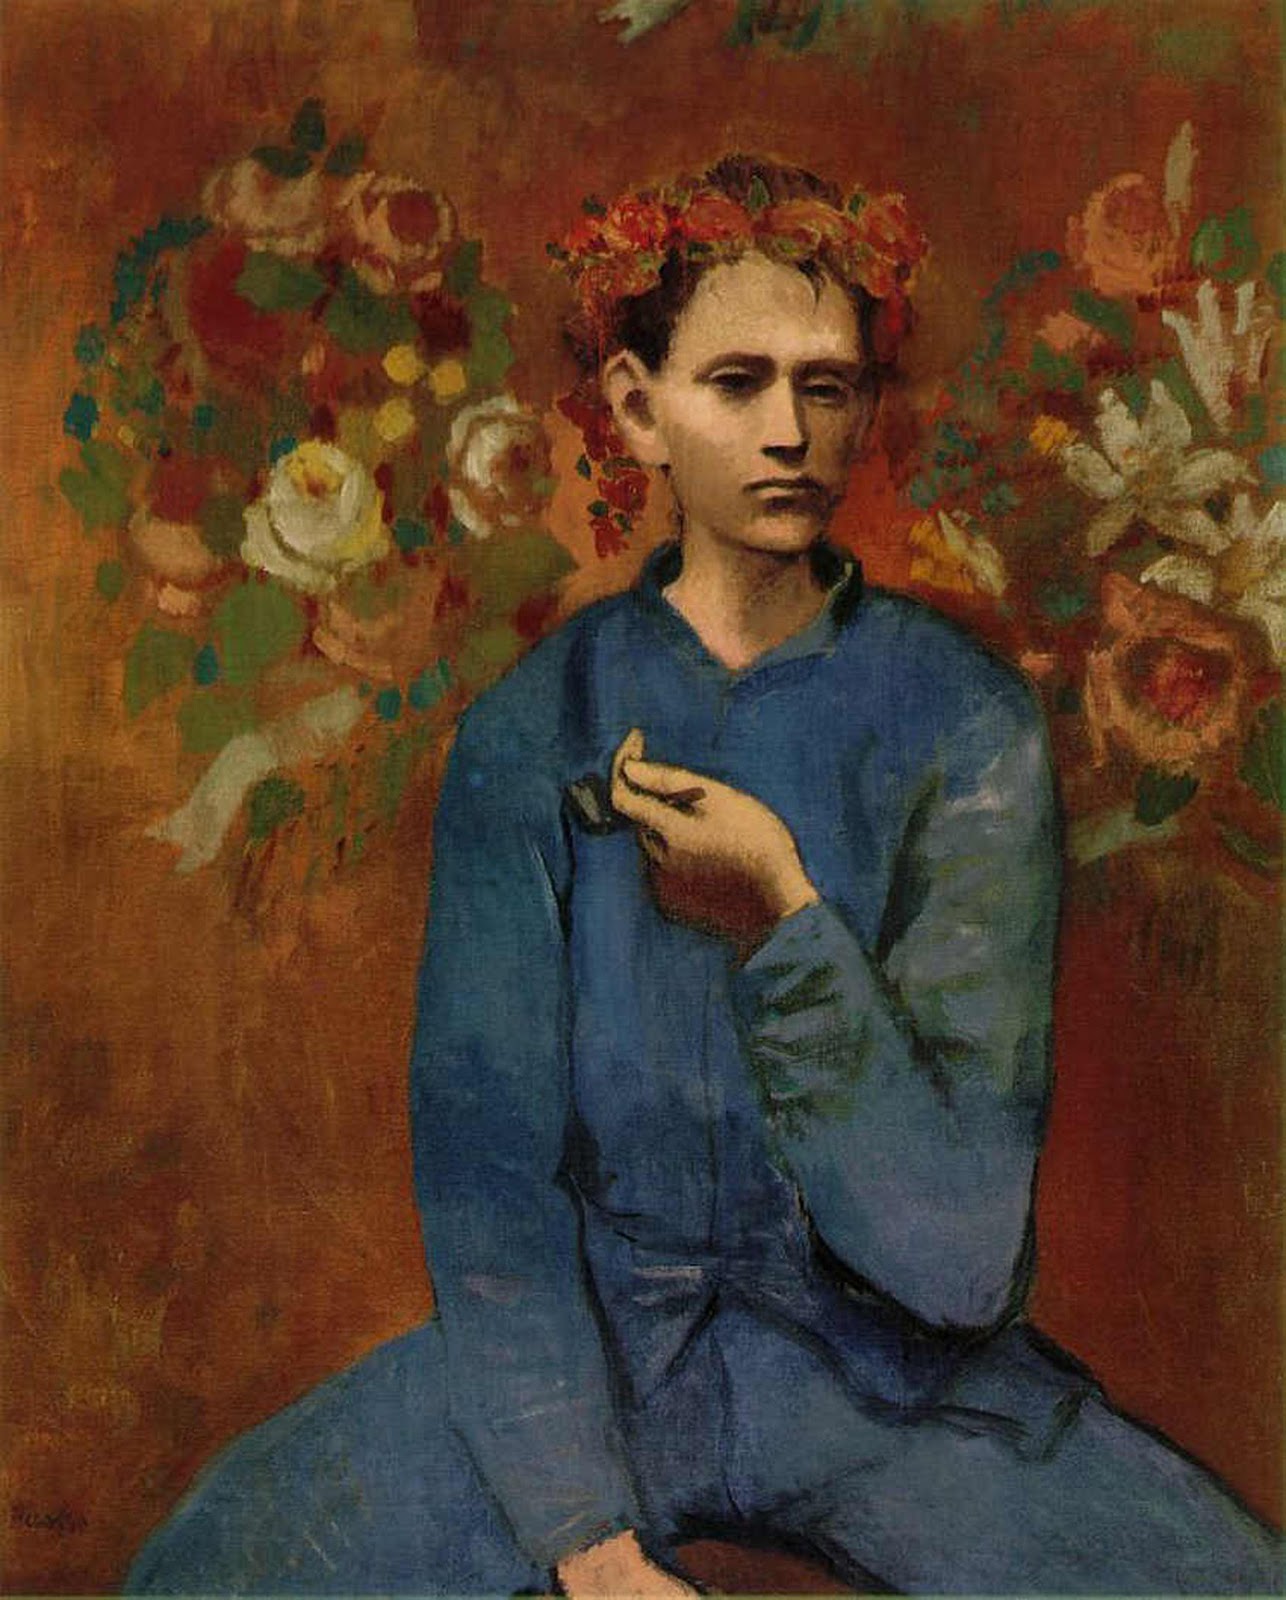 Garcon a la Pipe by Pablo Picasso - 1905 - 100 × 81.3 cm private collection